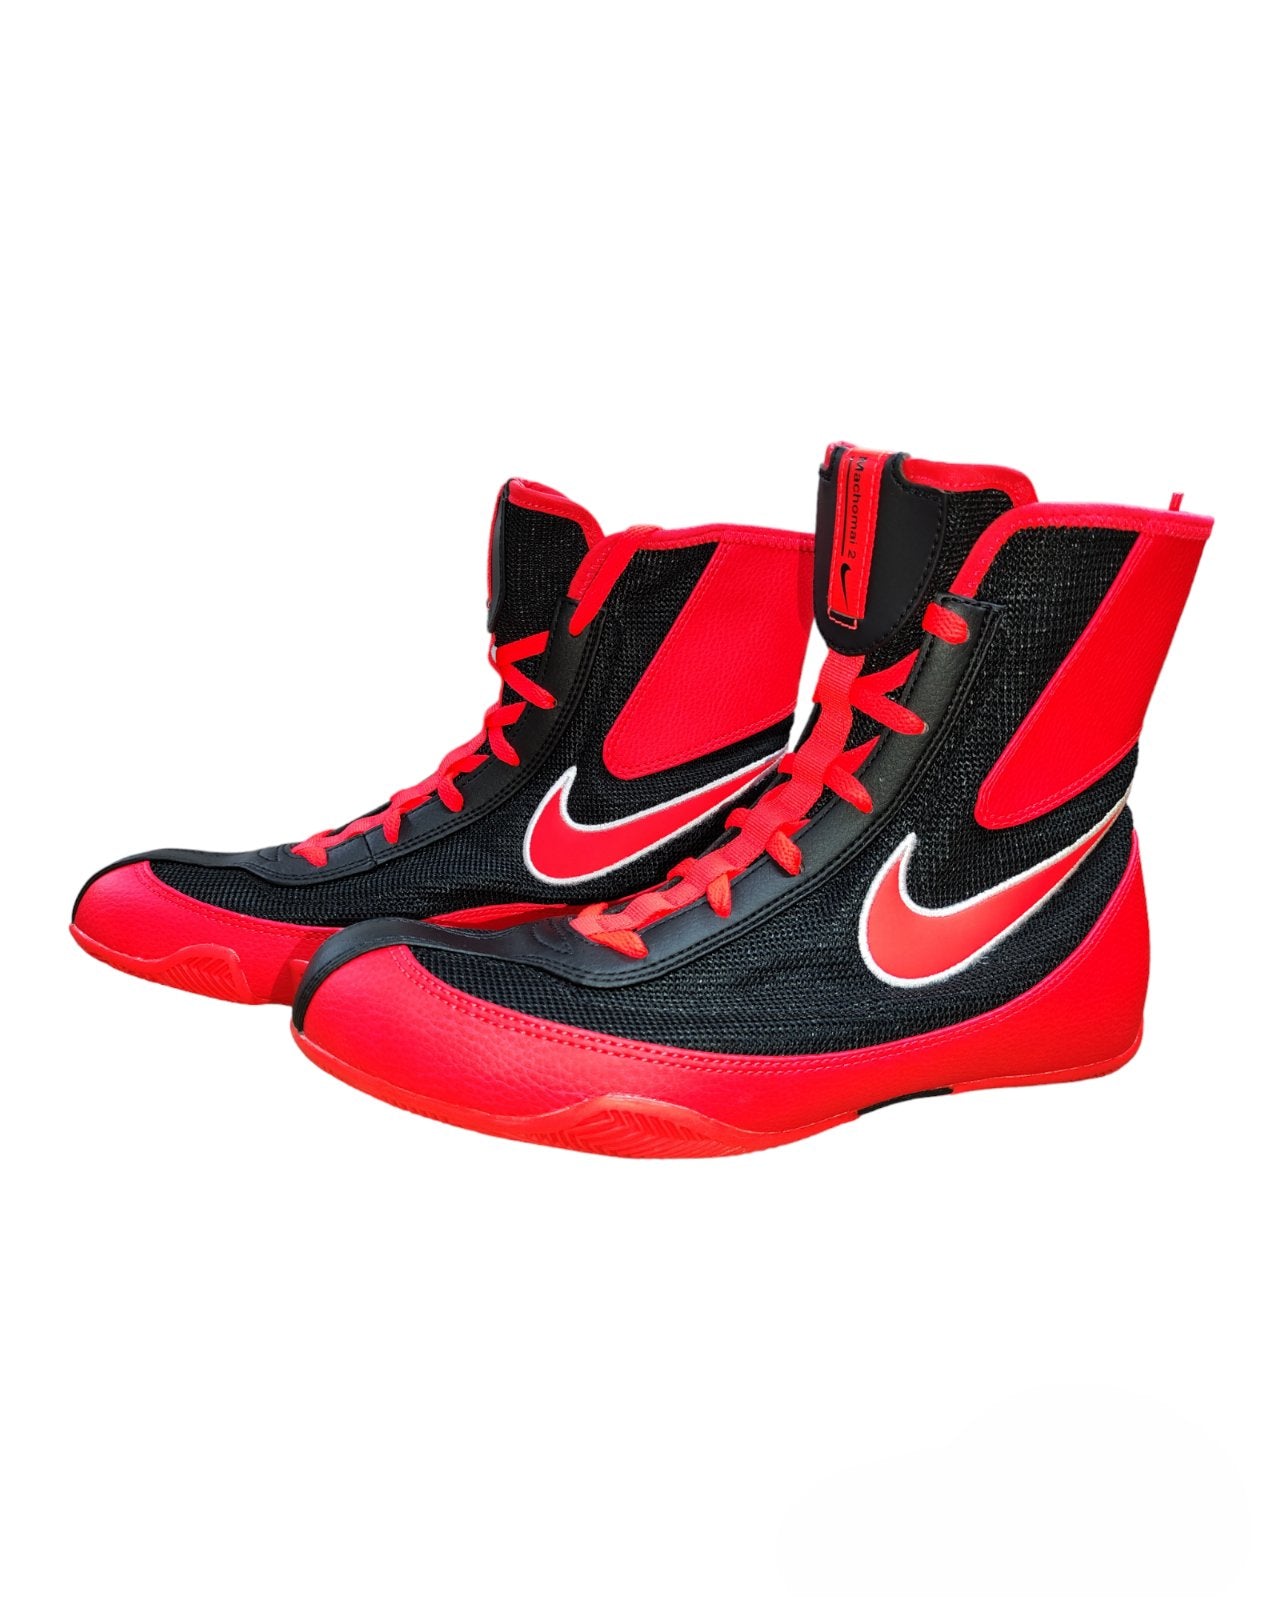 Nike Machomai 2 Boxing Shoes [Black/Bright Crimson]